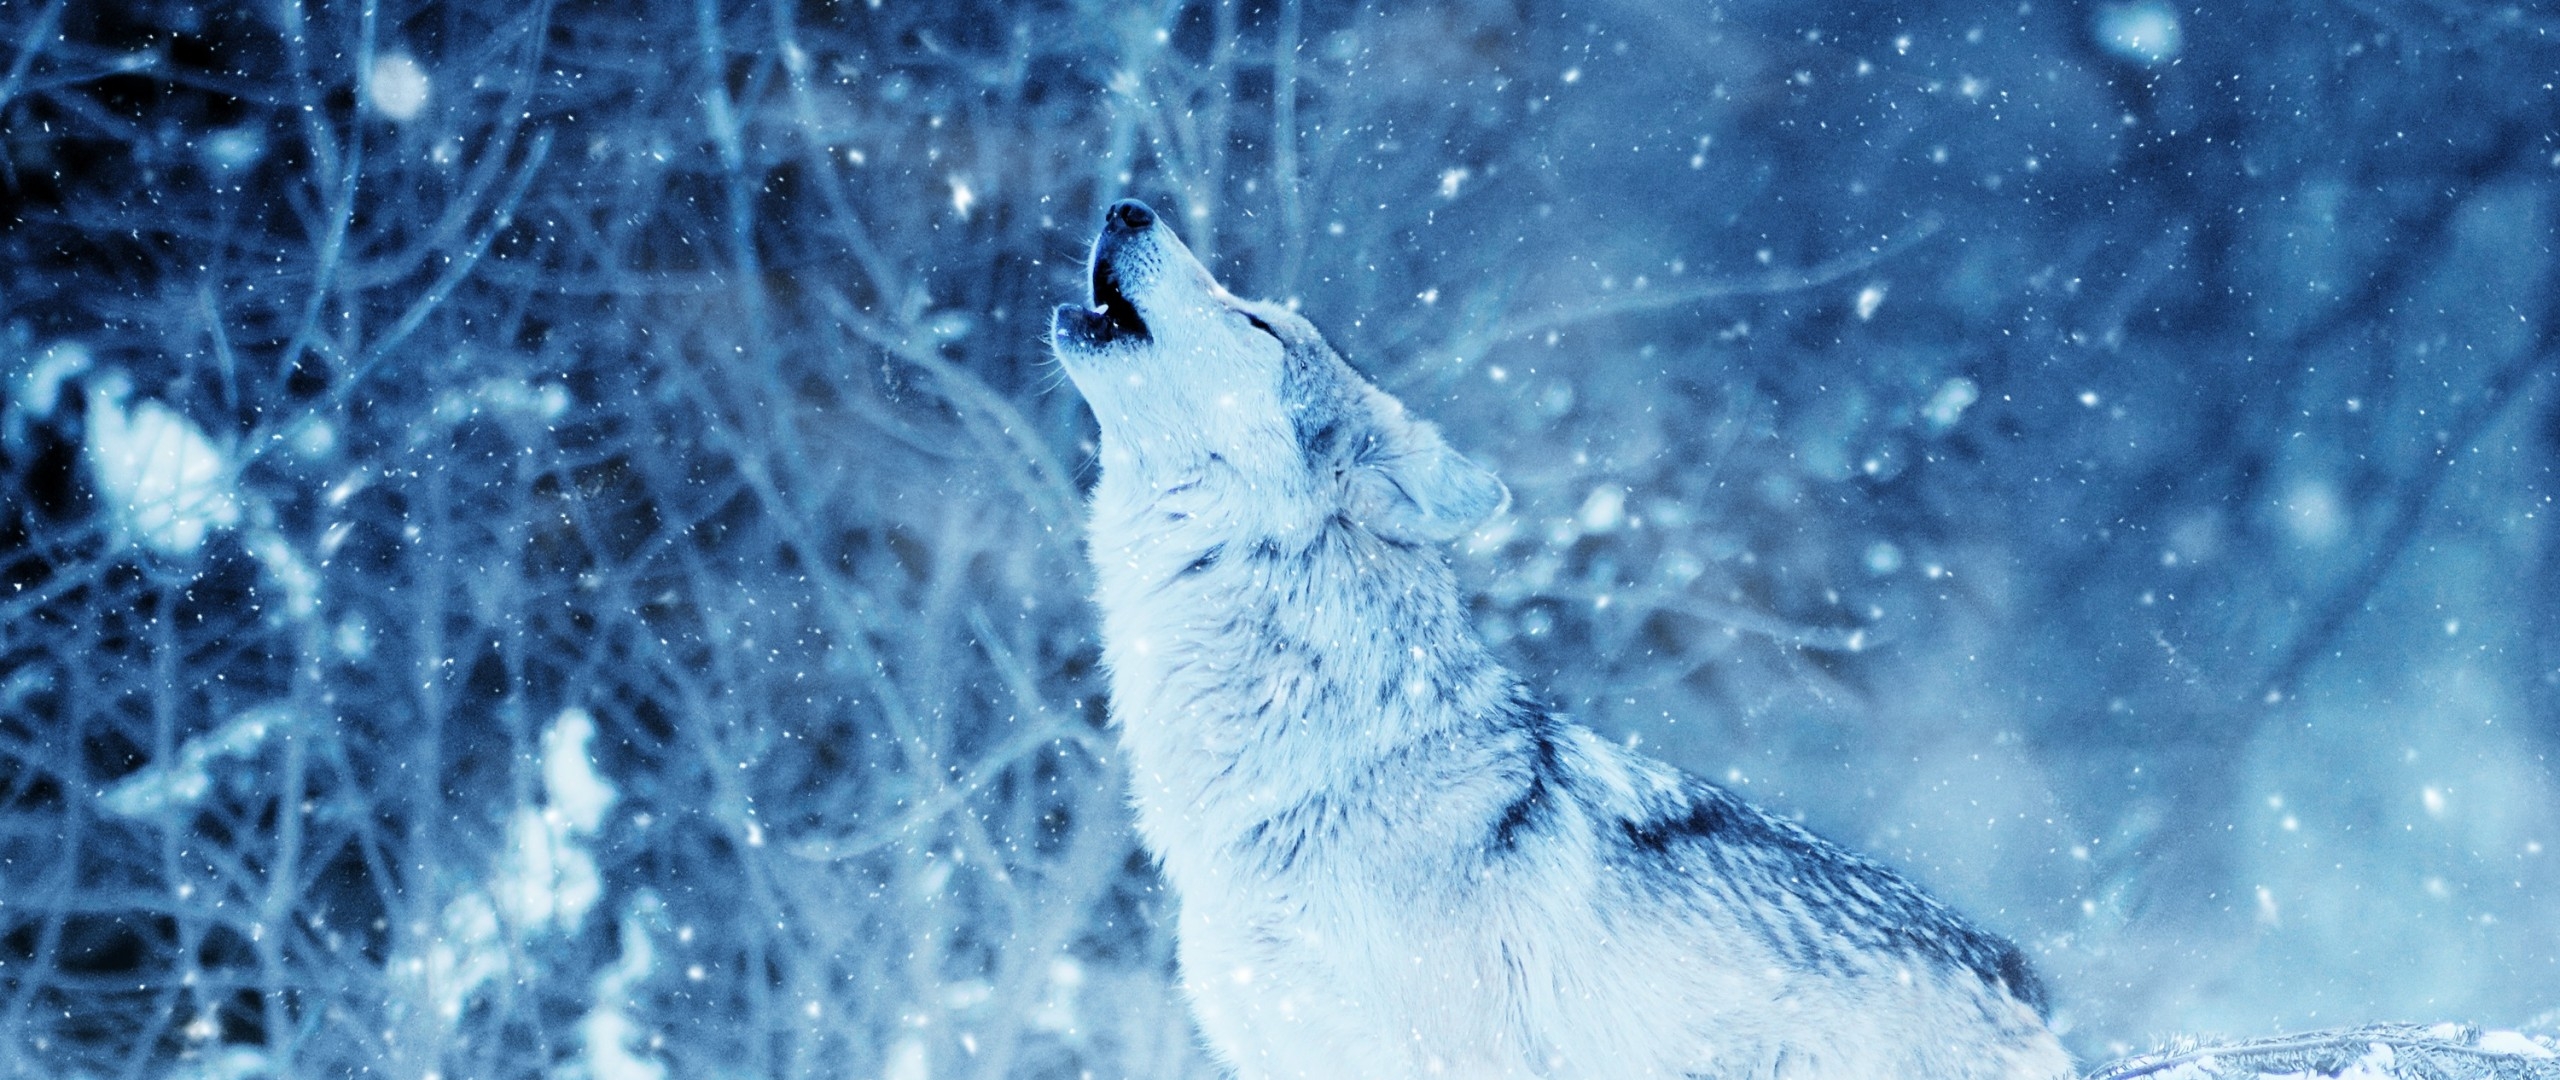 Wolf Howling In Winter - HD Wallpaper 